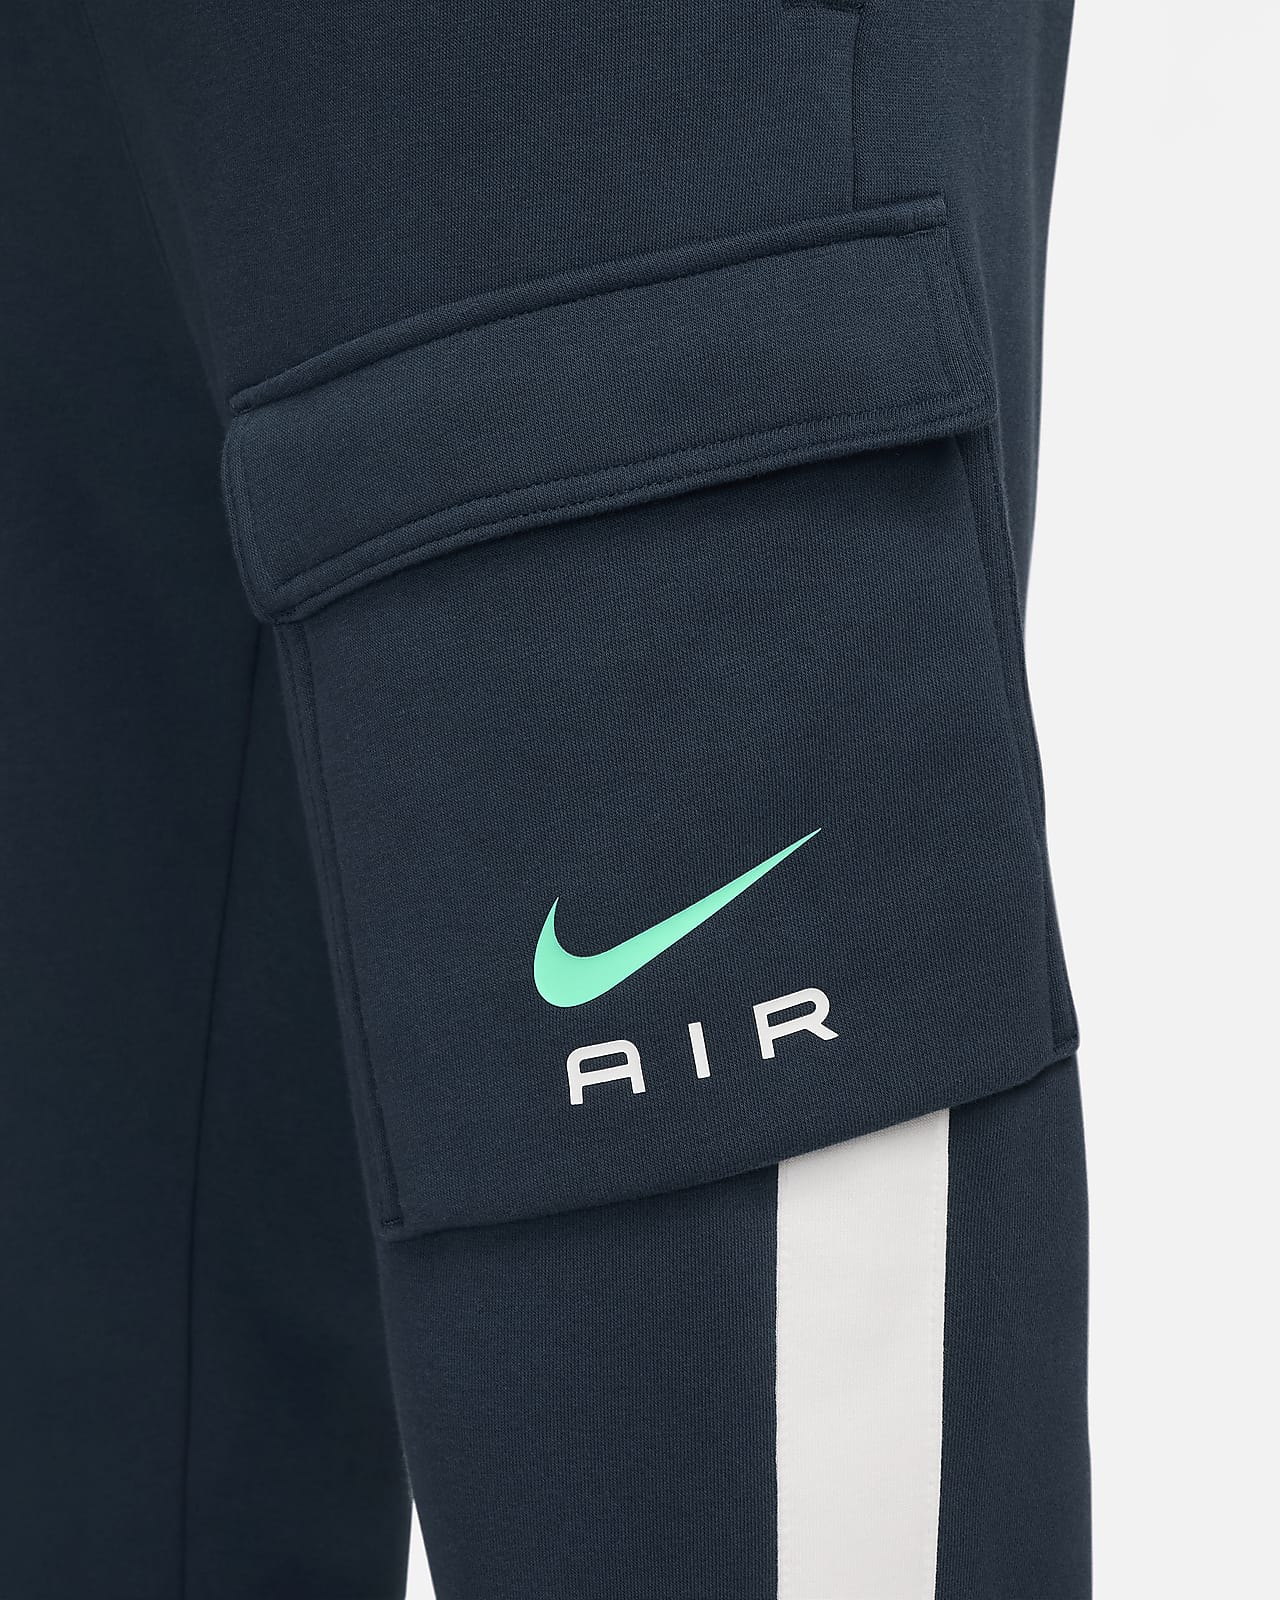 Nike Sportswear Unlined Utility Tan Cargo Pants Men's Large LG Khaki  DN4360-224